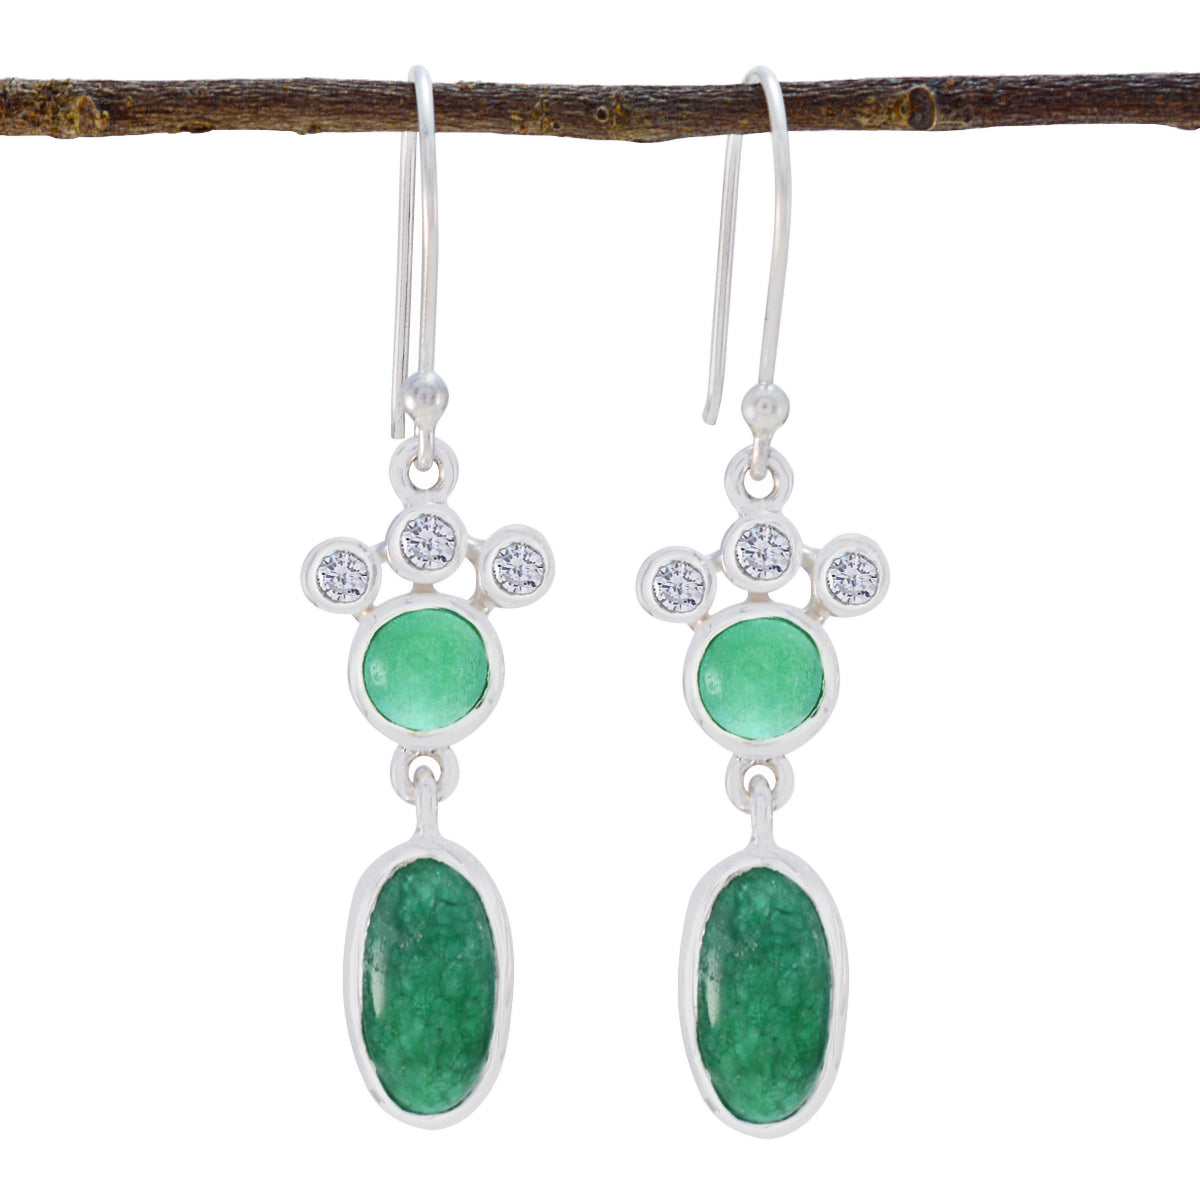 Riyo Göttlicher Sterlingsilber-Ohrring für Mädchen, indischer Smaragd-Ohrring, Lünettenfassung, grüner Ohrring, baumelnder Ohrring